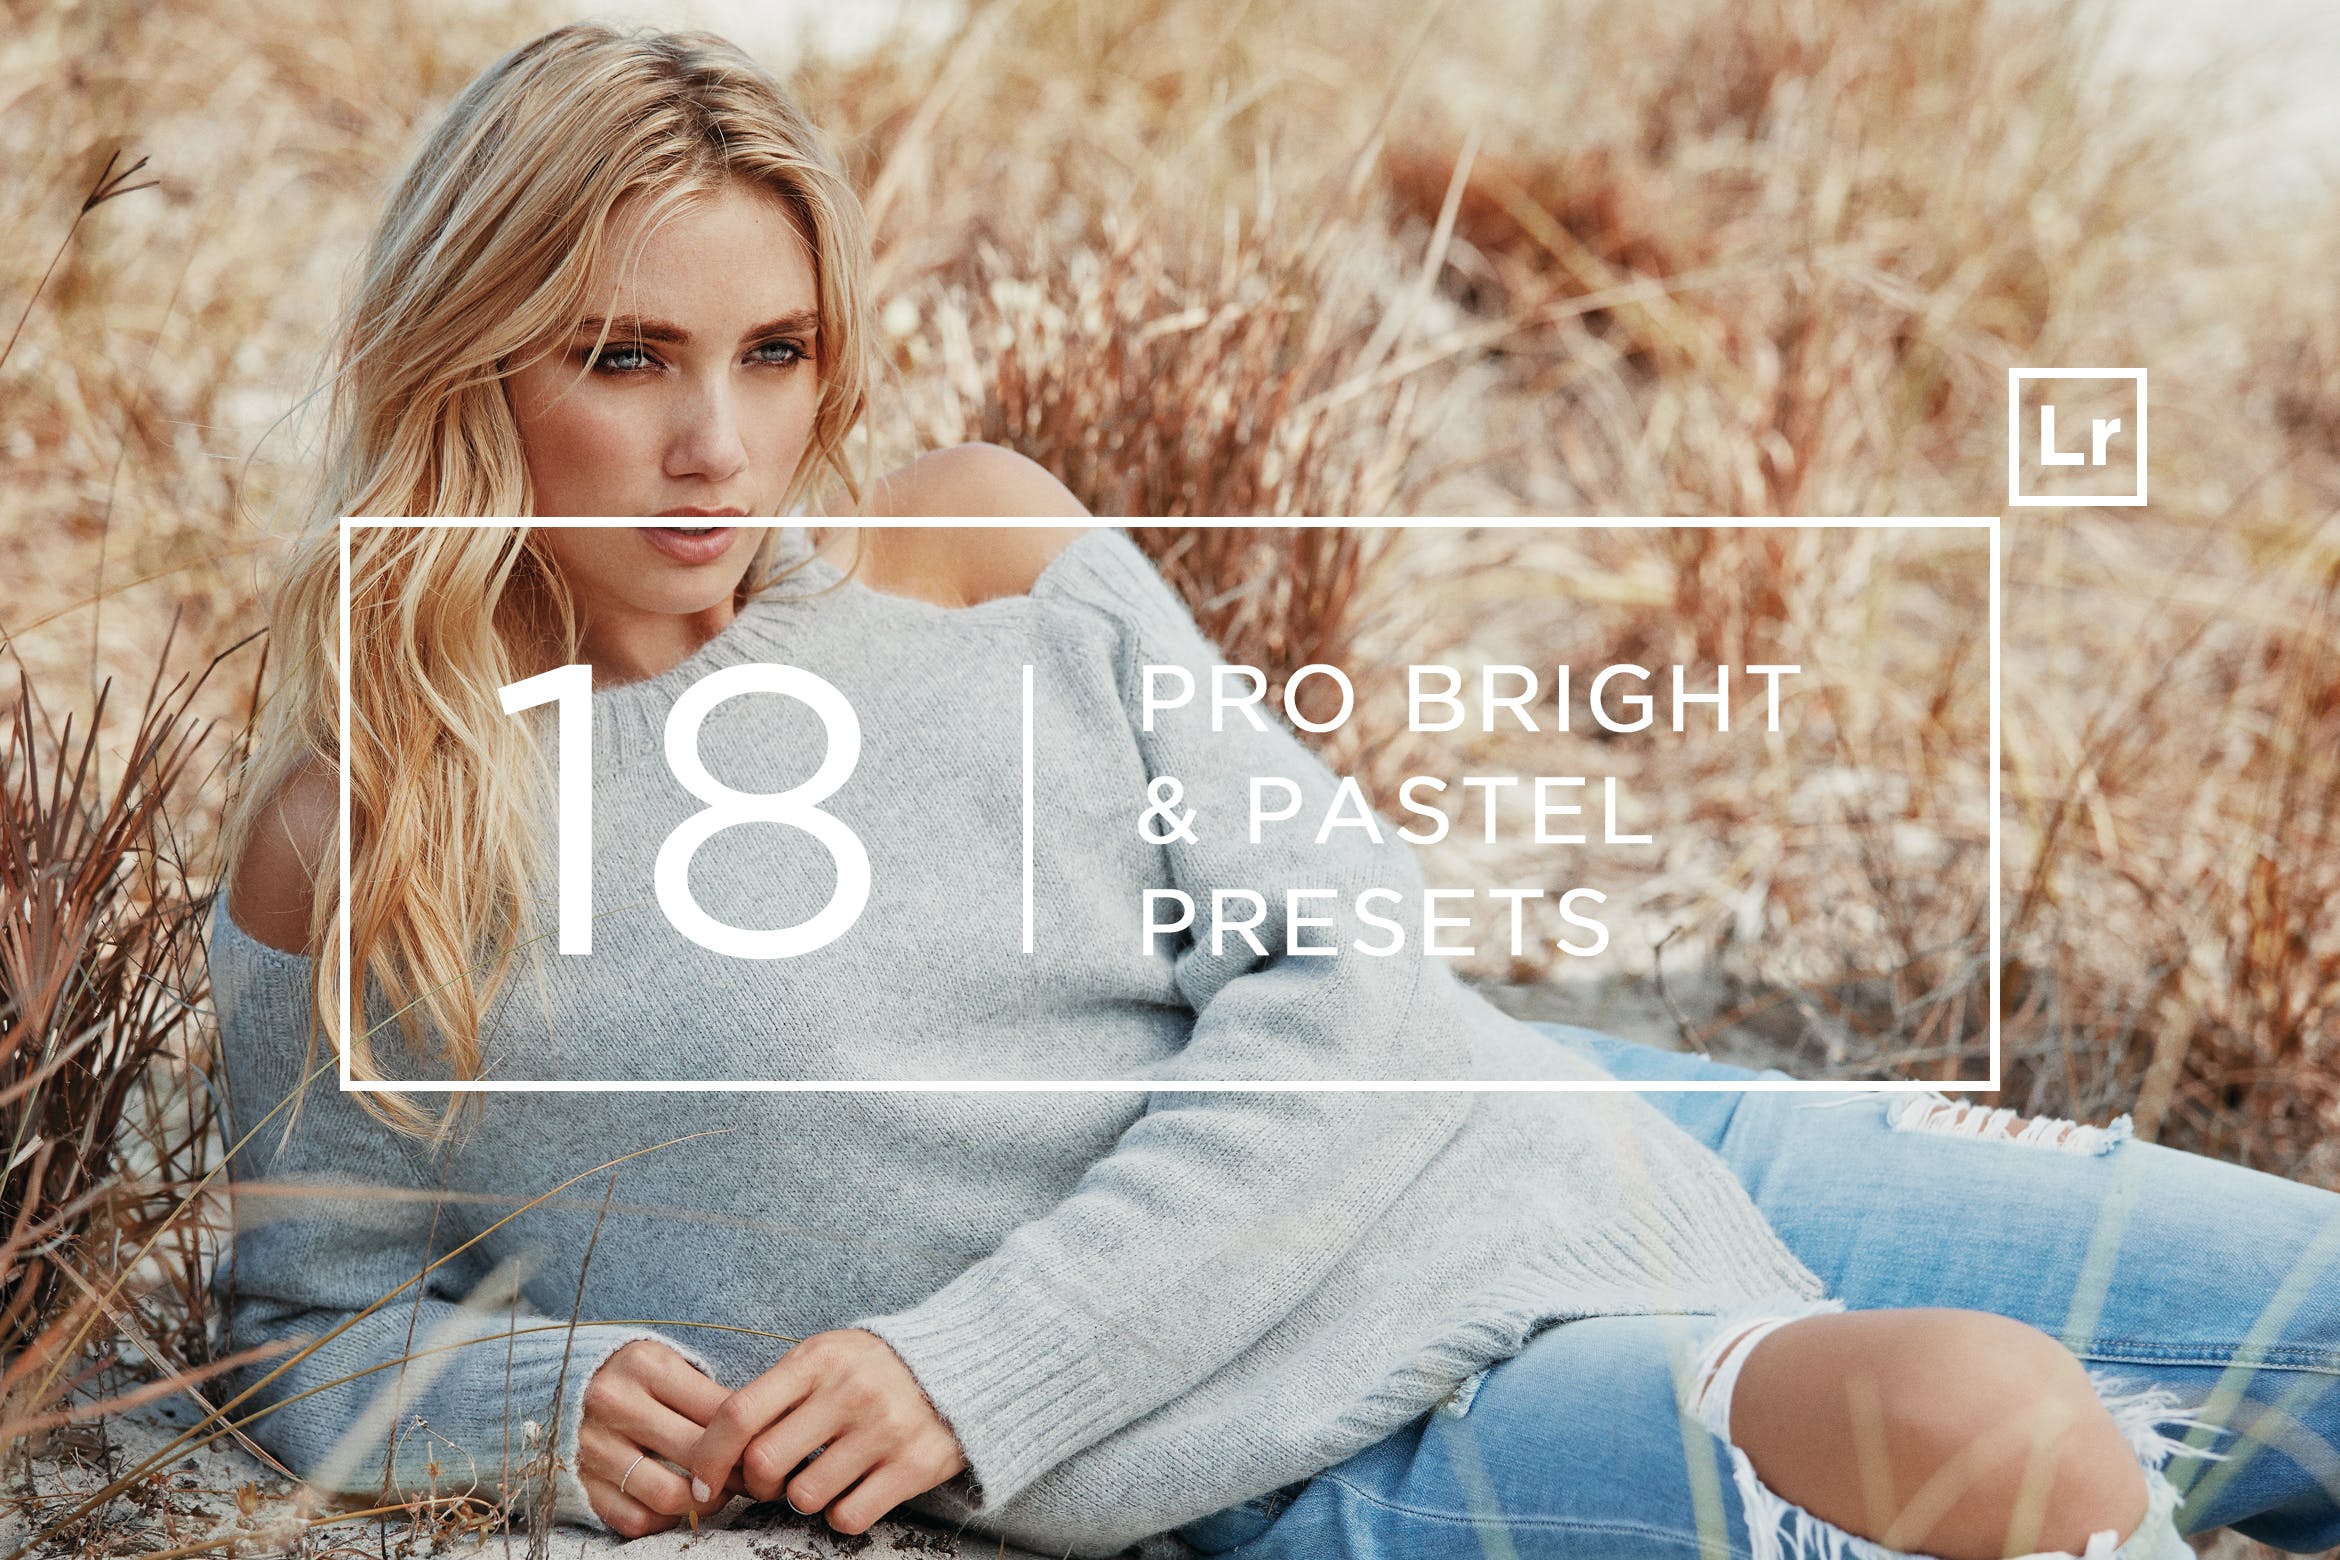 18个专业摄影师调色滤镜定制亿图网易图库精选LR预设 18 Pro Bright & Pastel Lightroom Presets插图